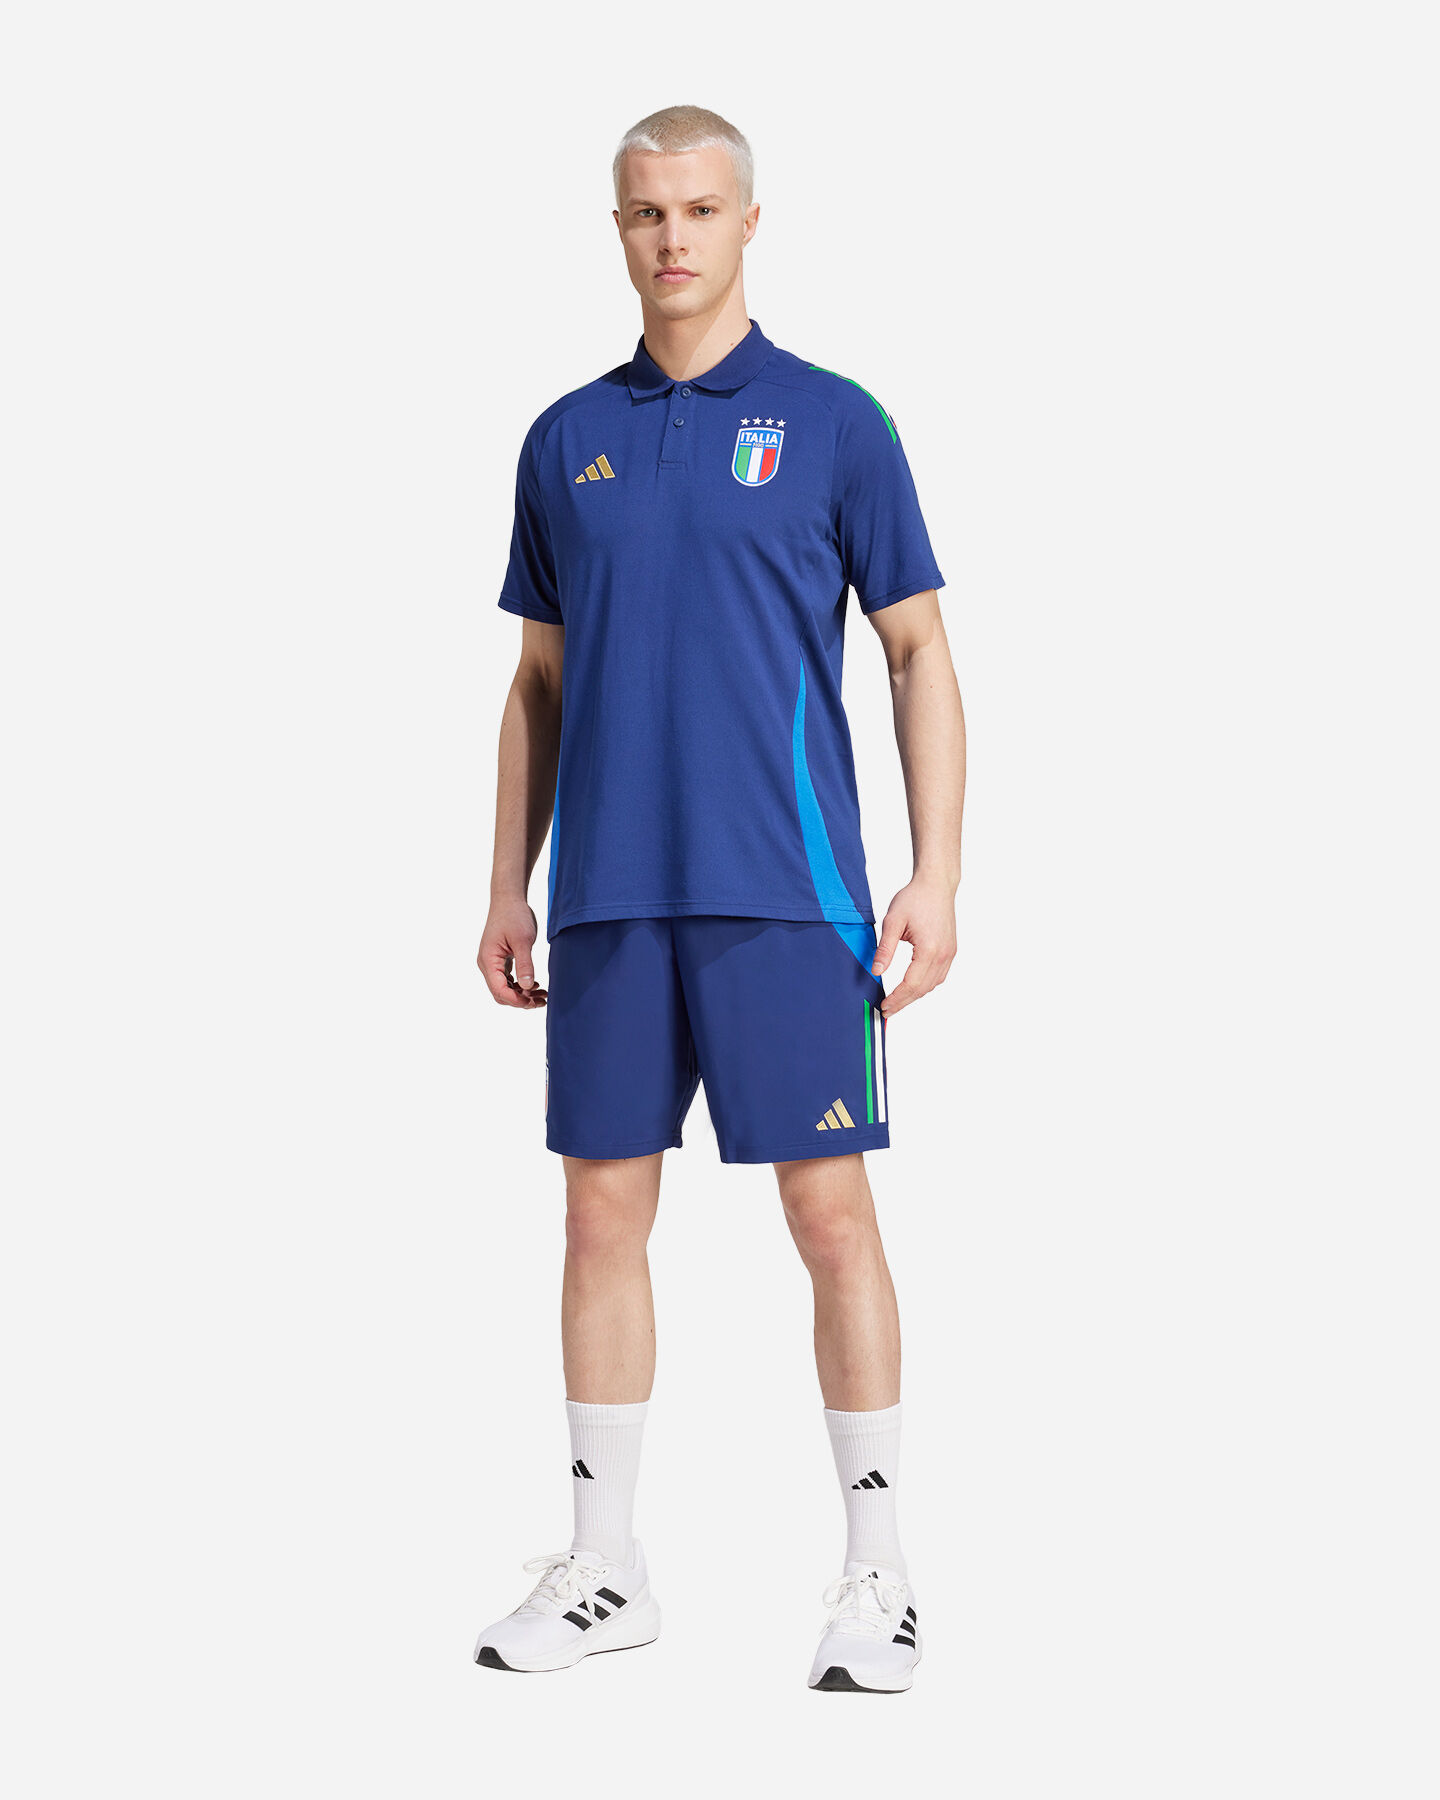  Abbigliamento calcio ufficiale ADIDAS ITALIA FIGC M S5655106|UNI|S scatto 3